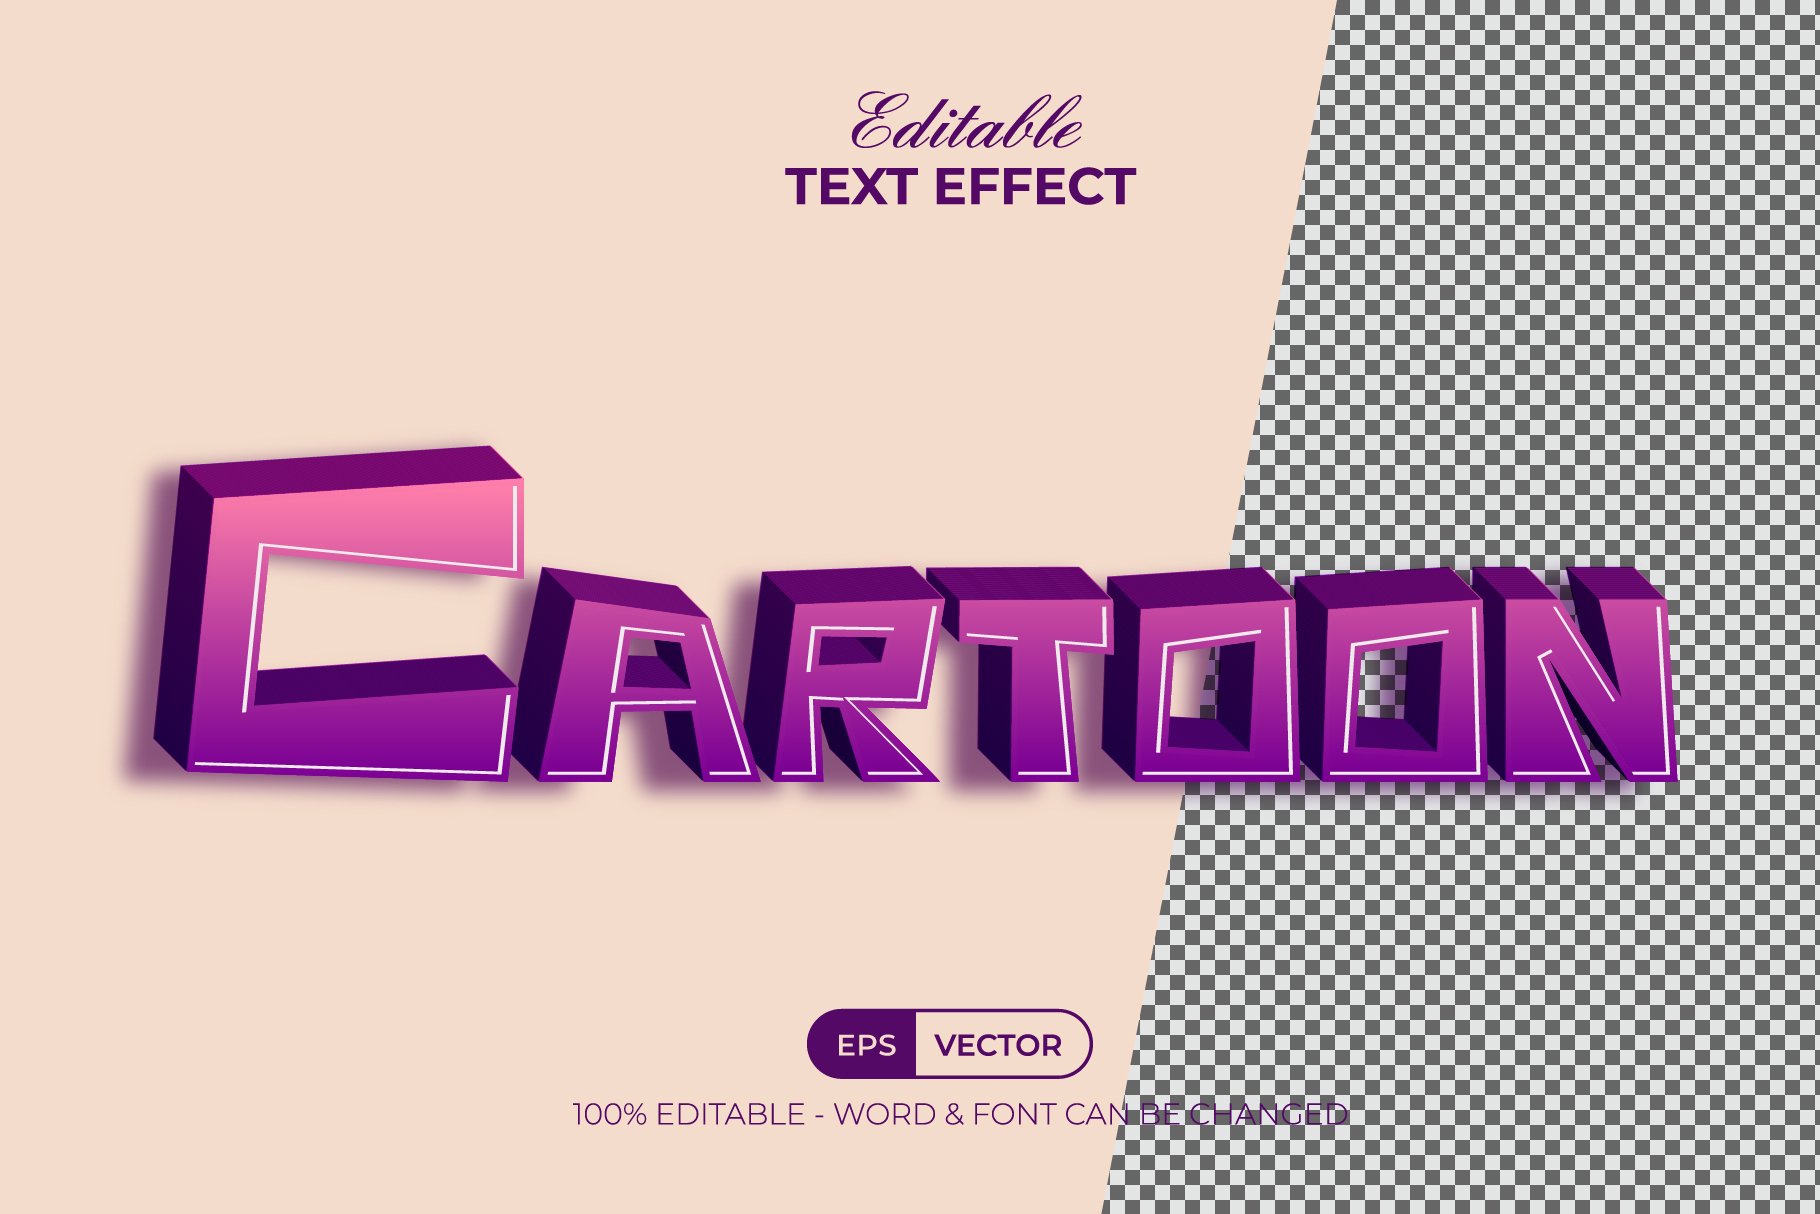 3d text effect cartoon style 3 01 519